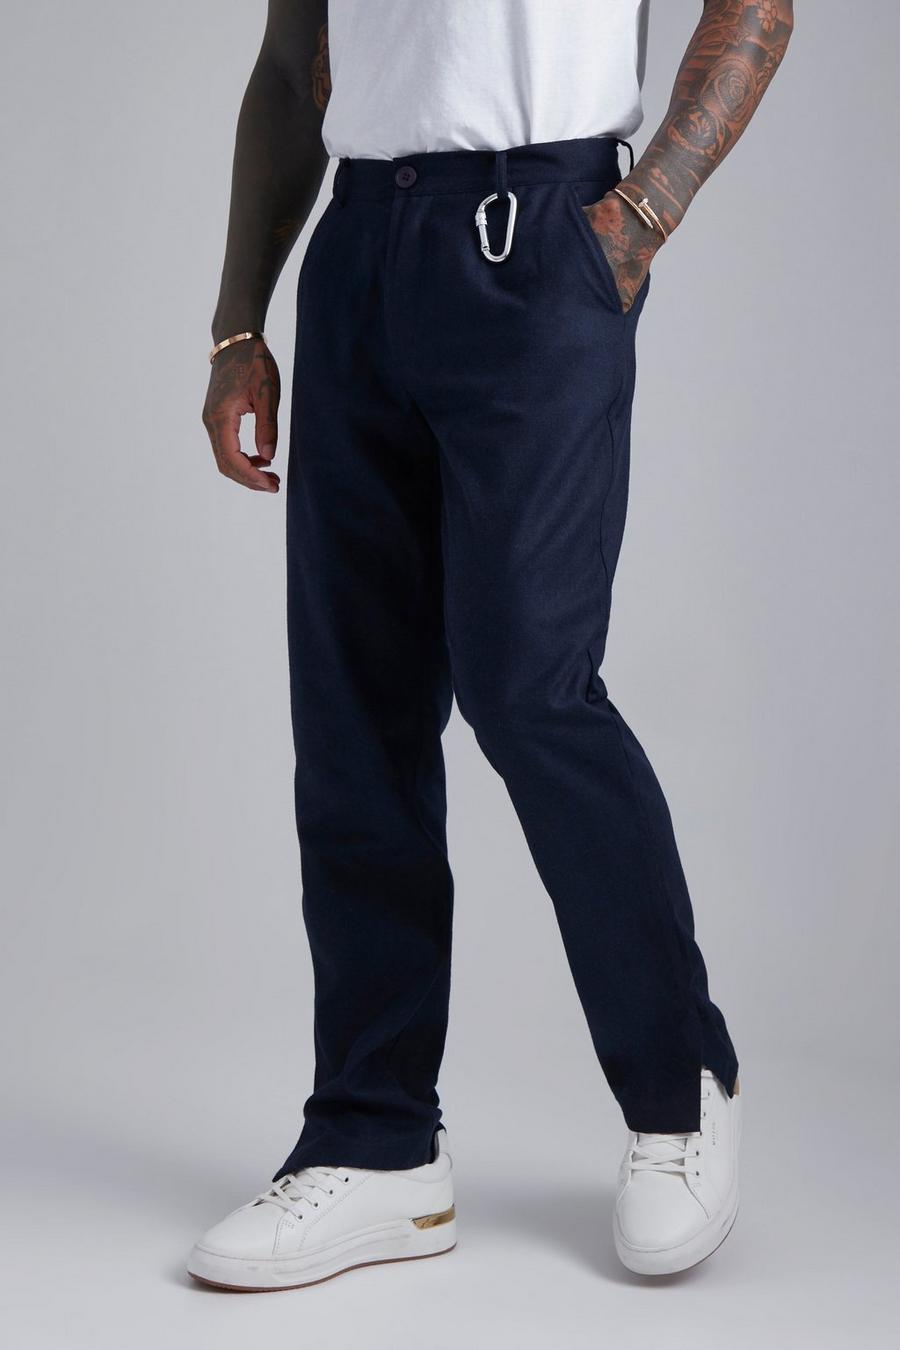 Pantaloni dritti effetto lana con spacco sul fondo e vita fissa, Navy blu oltremare